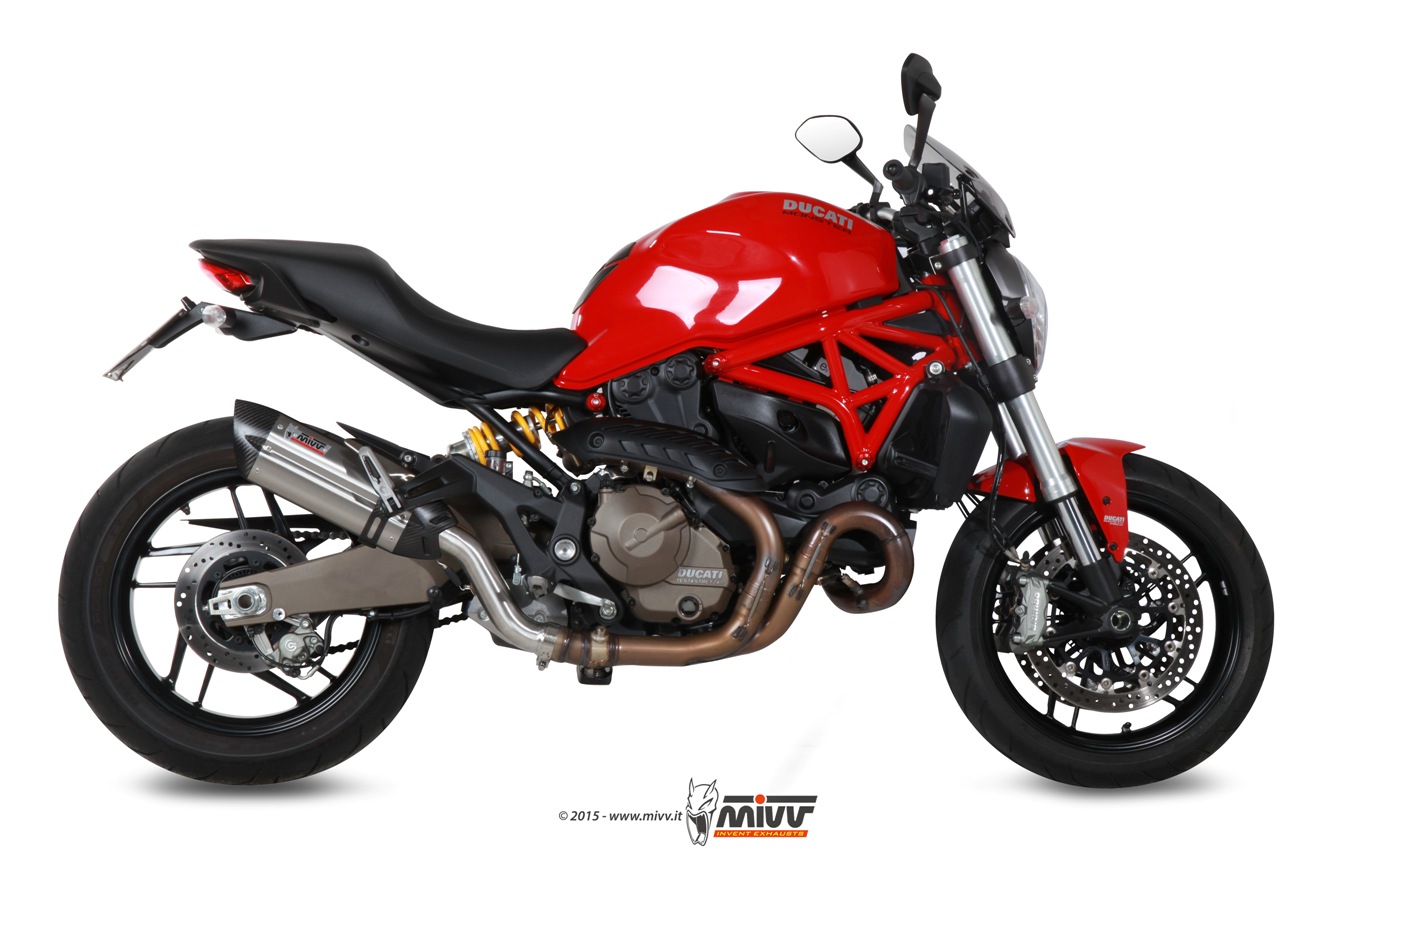 Mivv Suono RVS Slip-on Einddemper met E-keur Ducati Monster 821 2014 > 2017